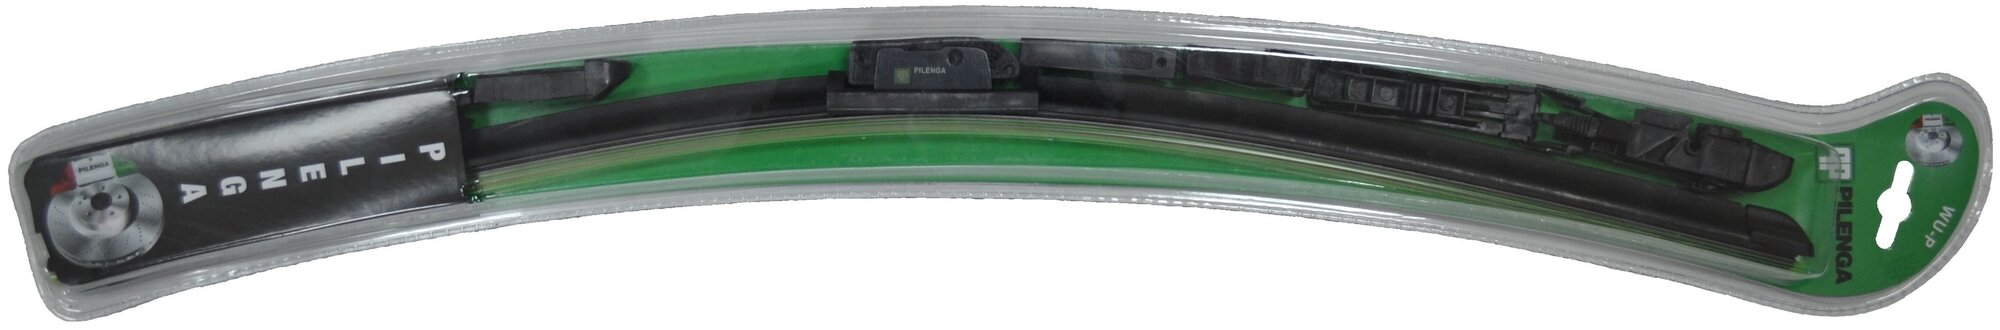 Щетка стеклоочистителя универсальная бескаркасная 500mm (11 адаптеров) HCV Pilenga WU-P 1500